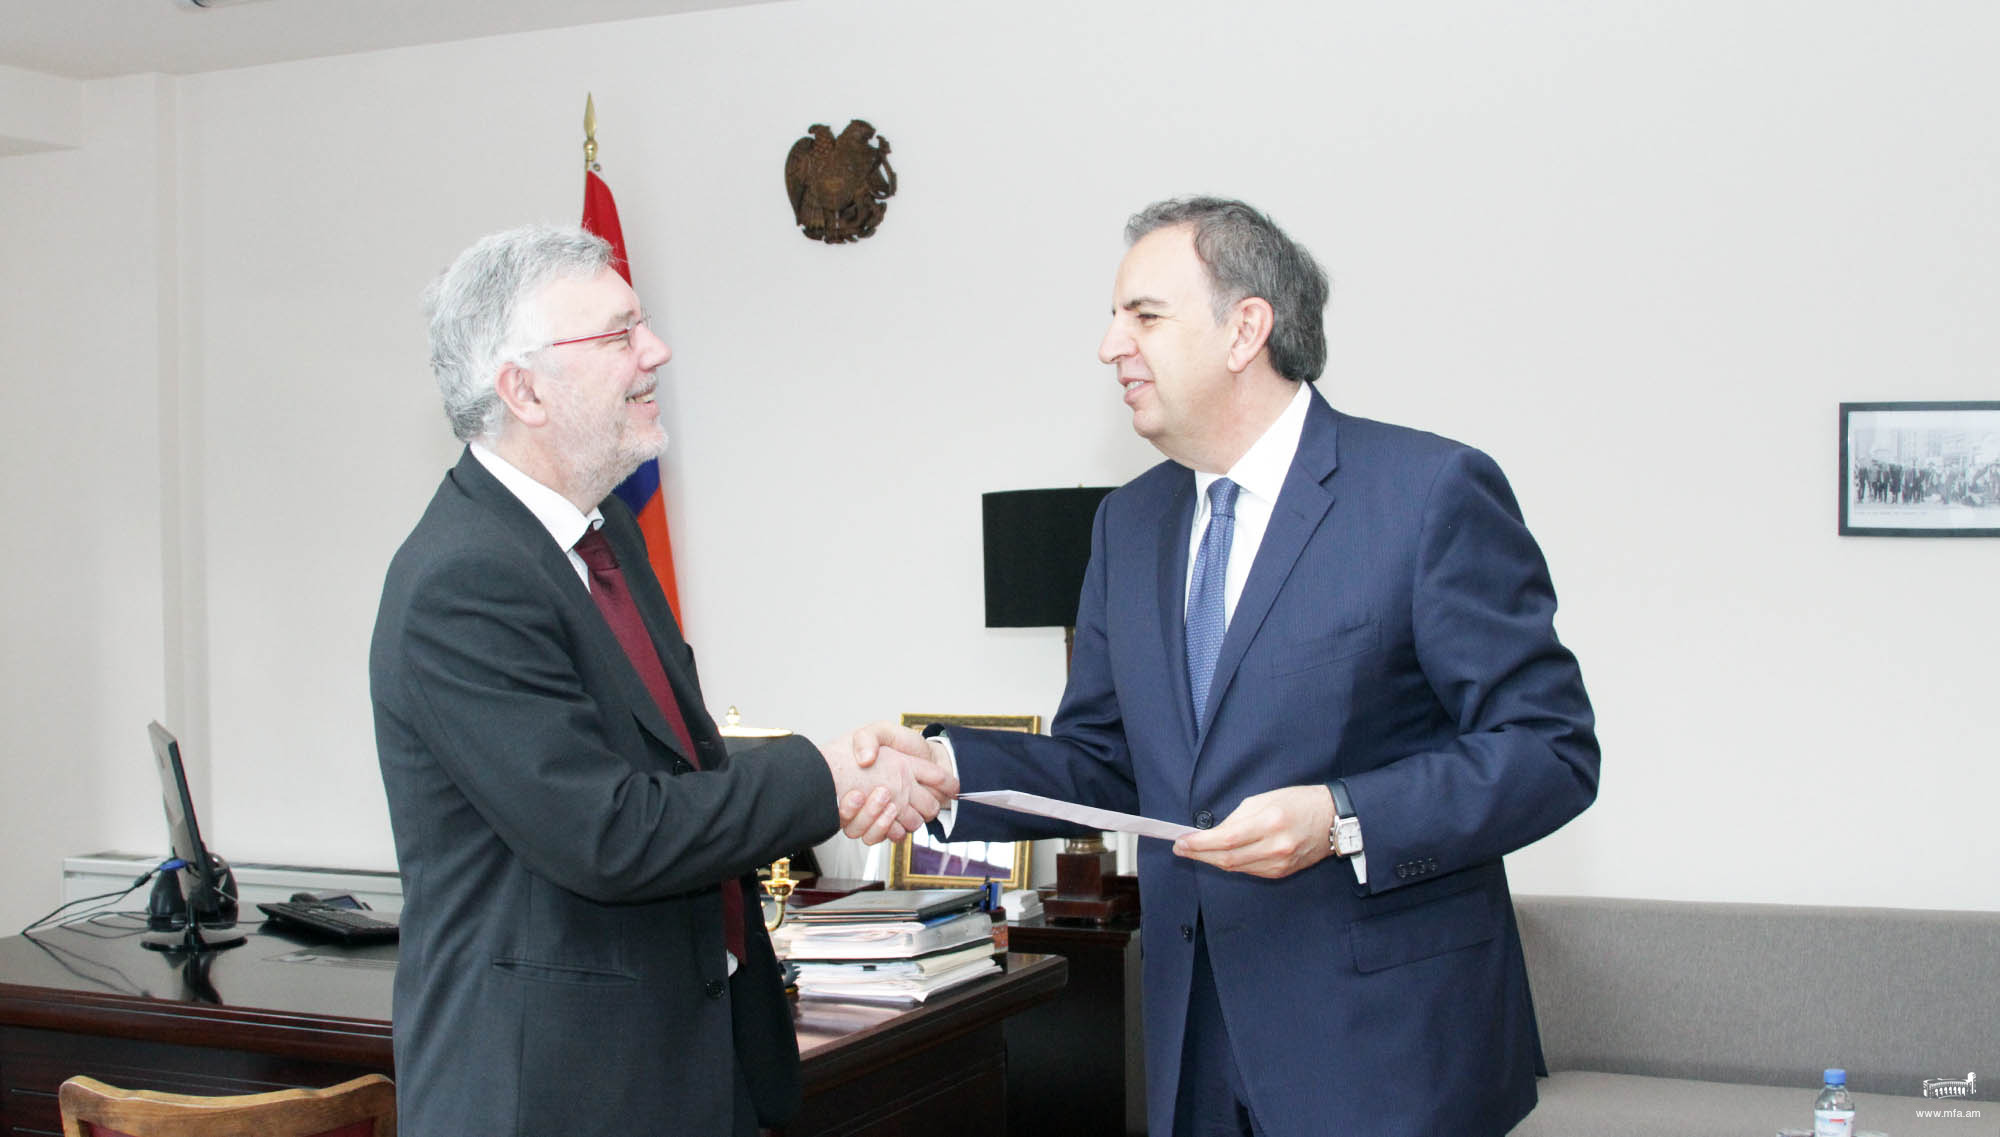 Посол Королевства Бельгия вручил копии верительных грамот заместителю министра иностранных дел Республики Армения